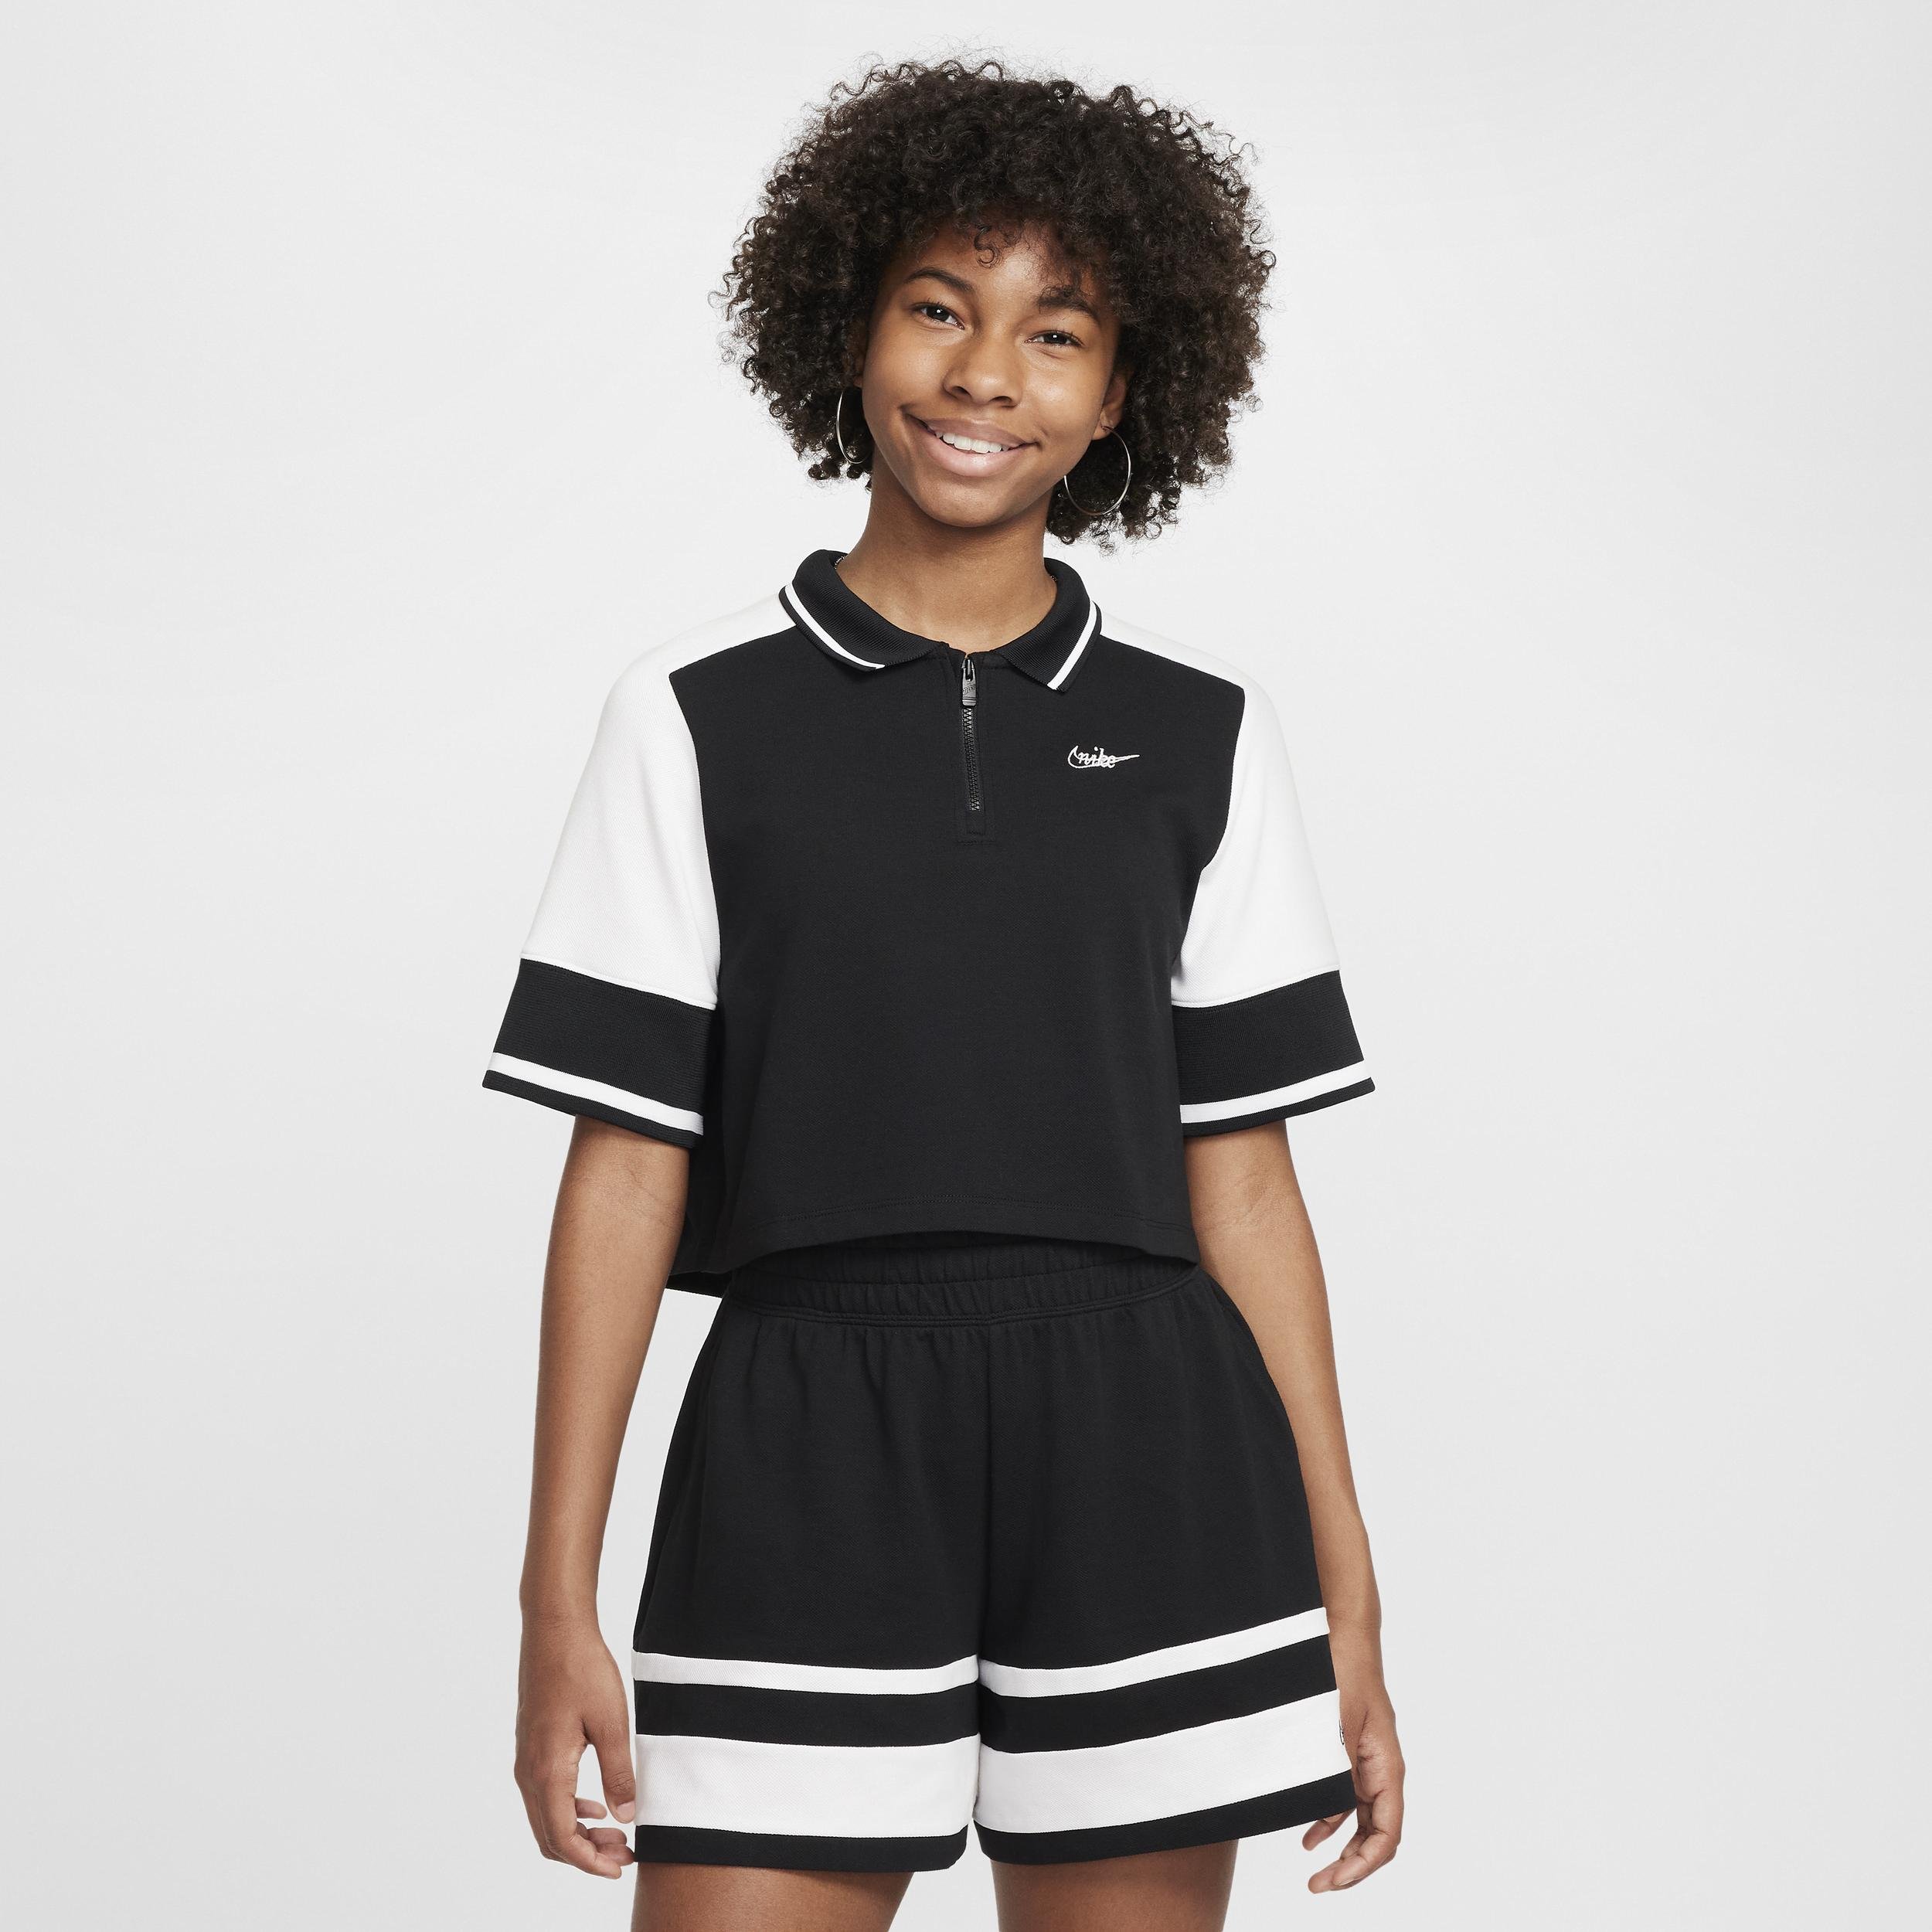 Women's Nike Sportswear Girls' Crop Top by NIKE